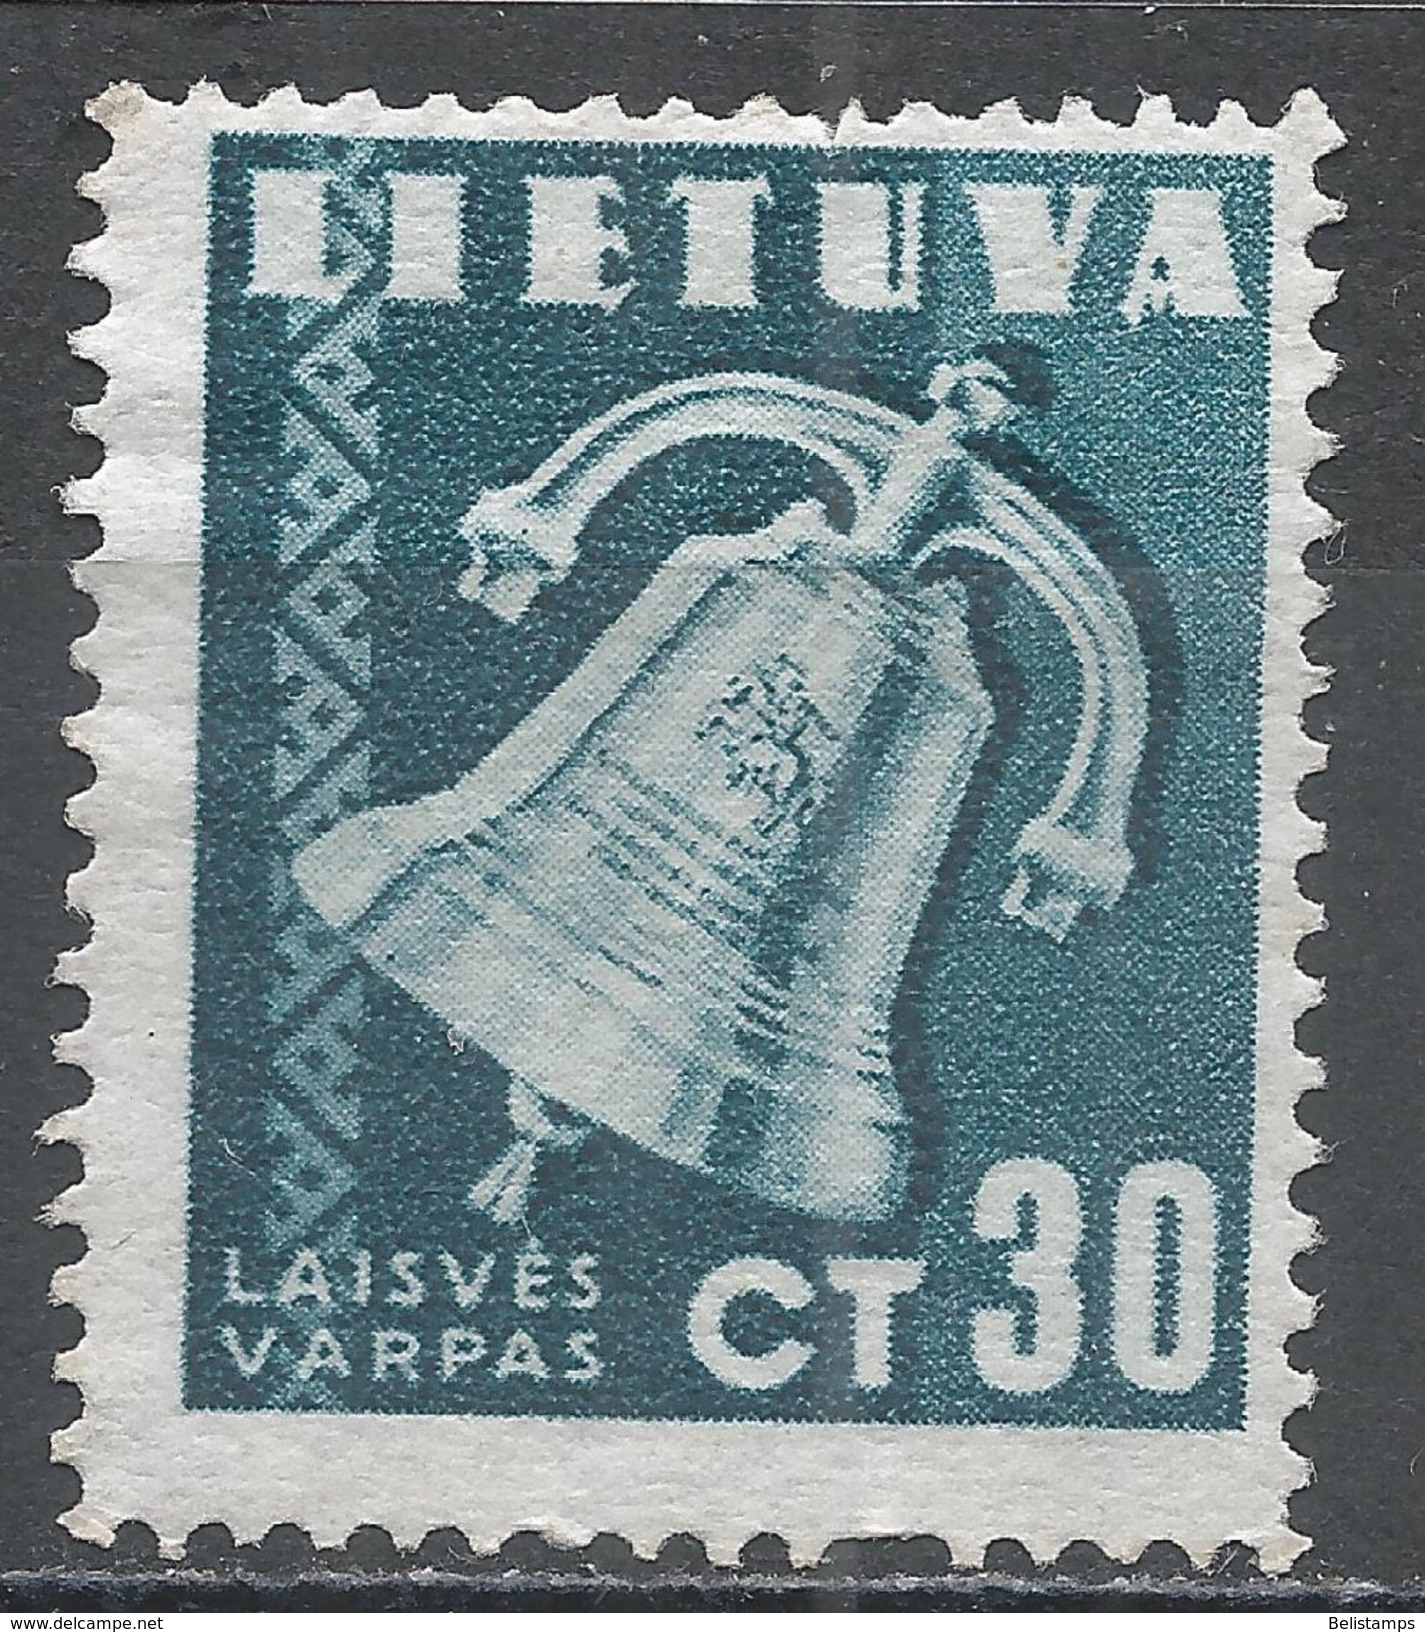 Lithuania 1940. Scott #321 (MNG) Liberty Bell, Cloche, Liberté - Lituanie